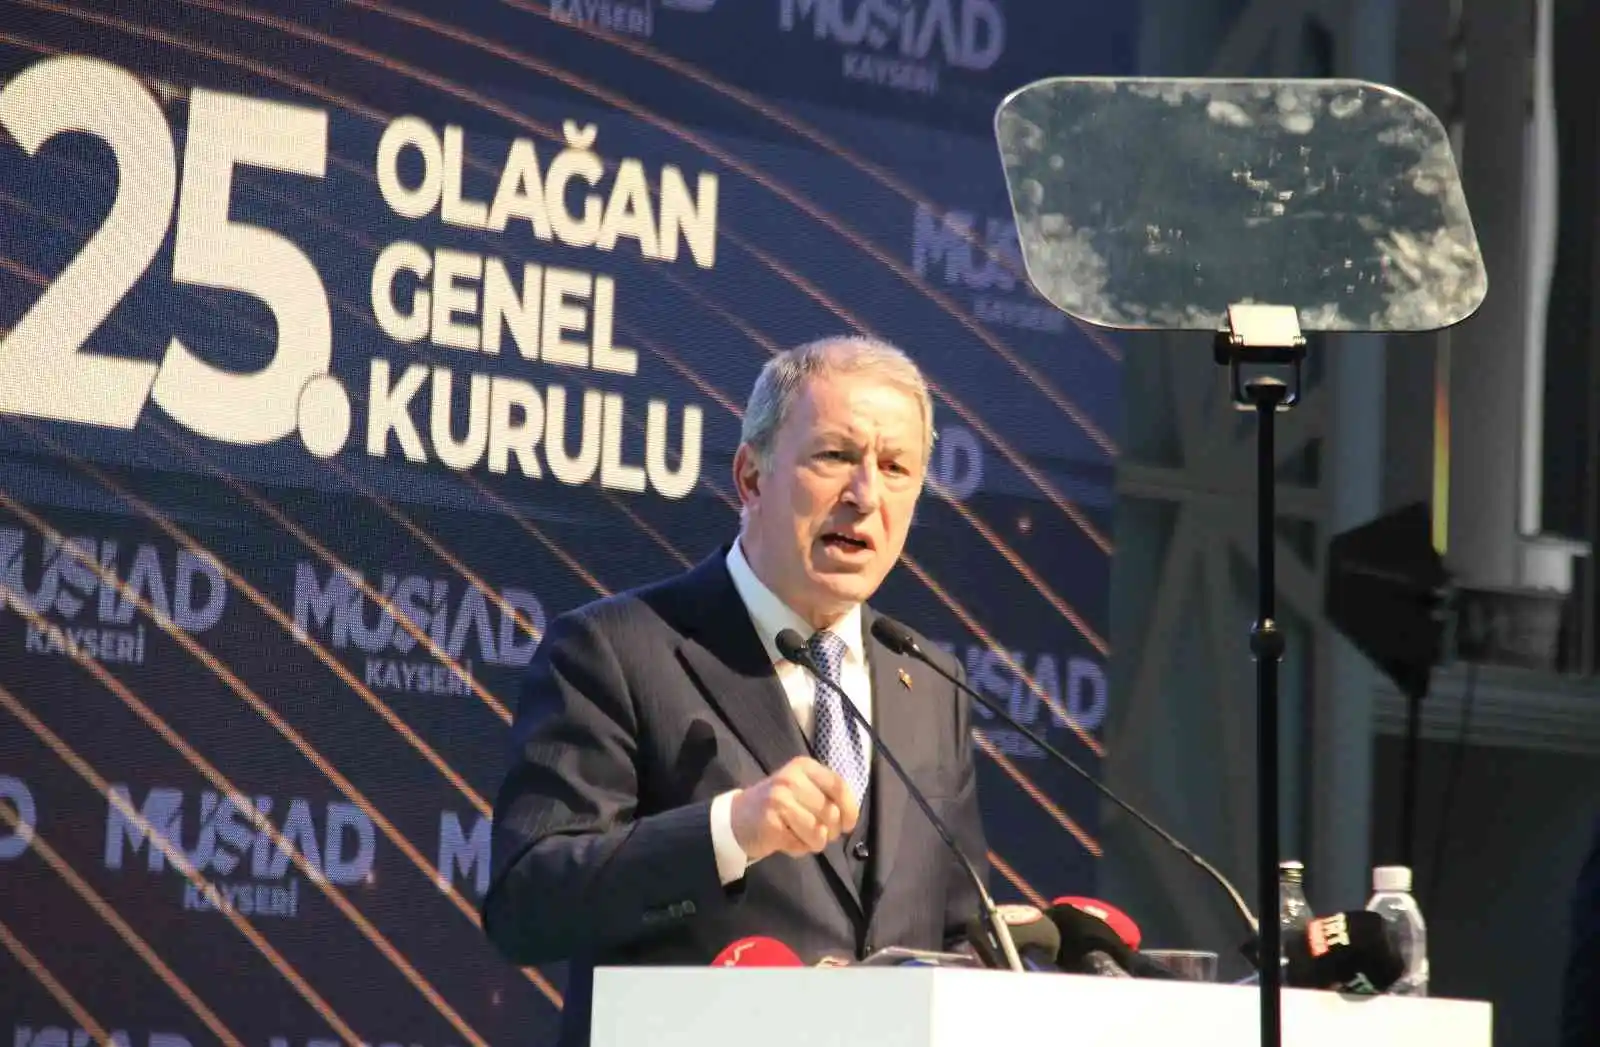 Bakan Akar: "Haince yapılan eylemlere karşı, ahlaksızlara karşı, Kur'an yakan şerefsizlere karşı Türkiye var"
